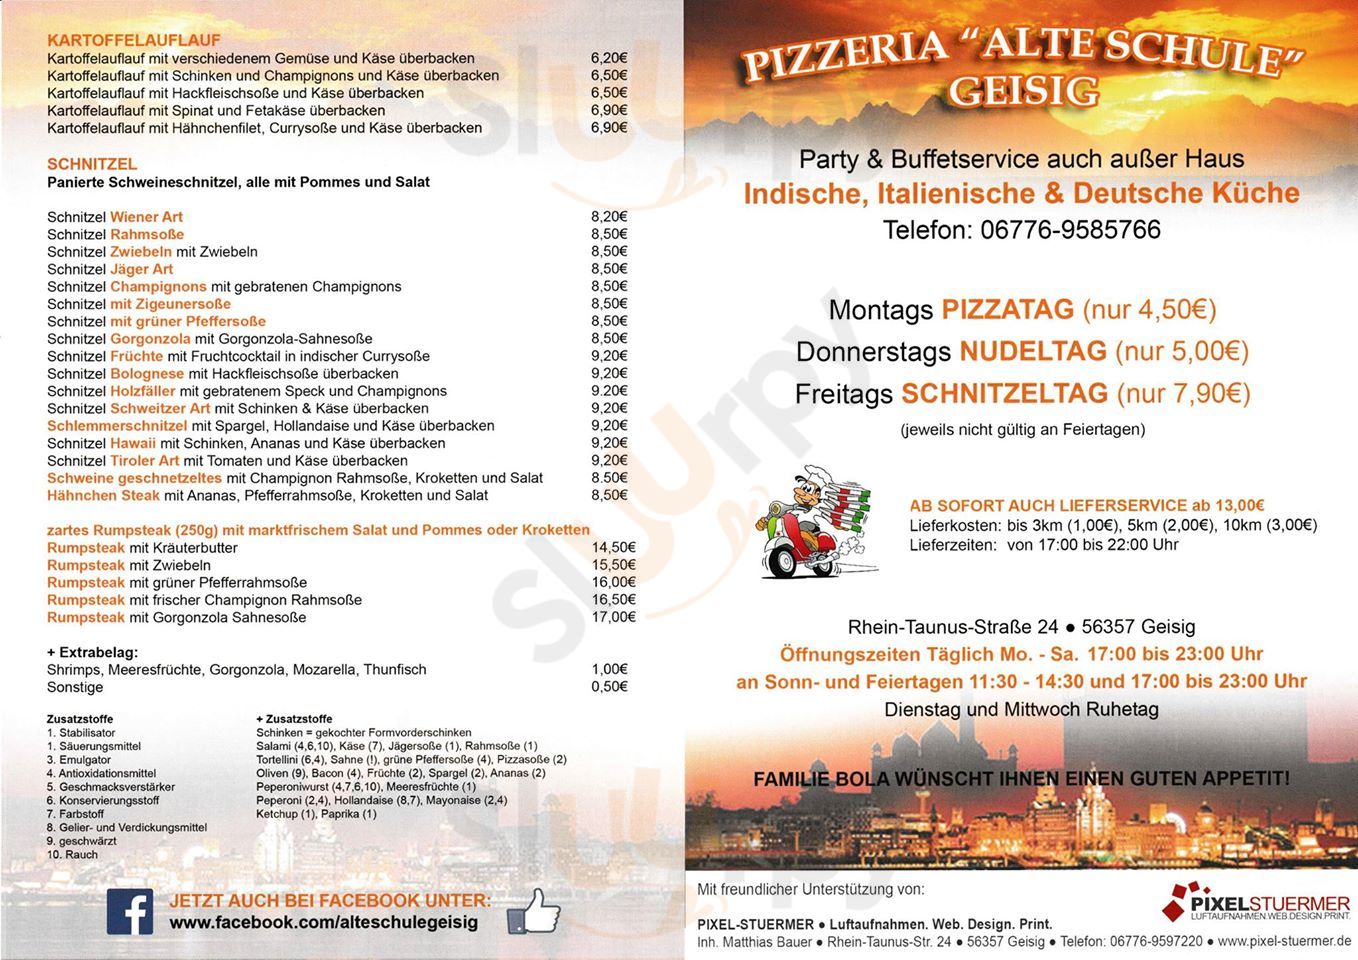 Pizzeria Alte Schule Geisig Menu - 1